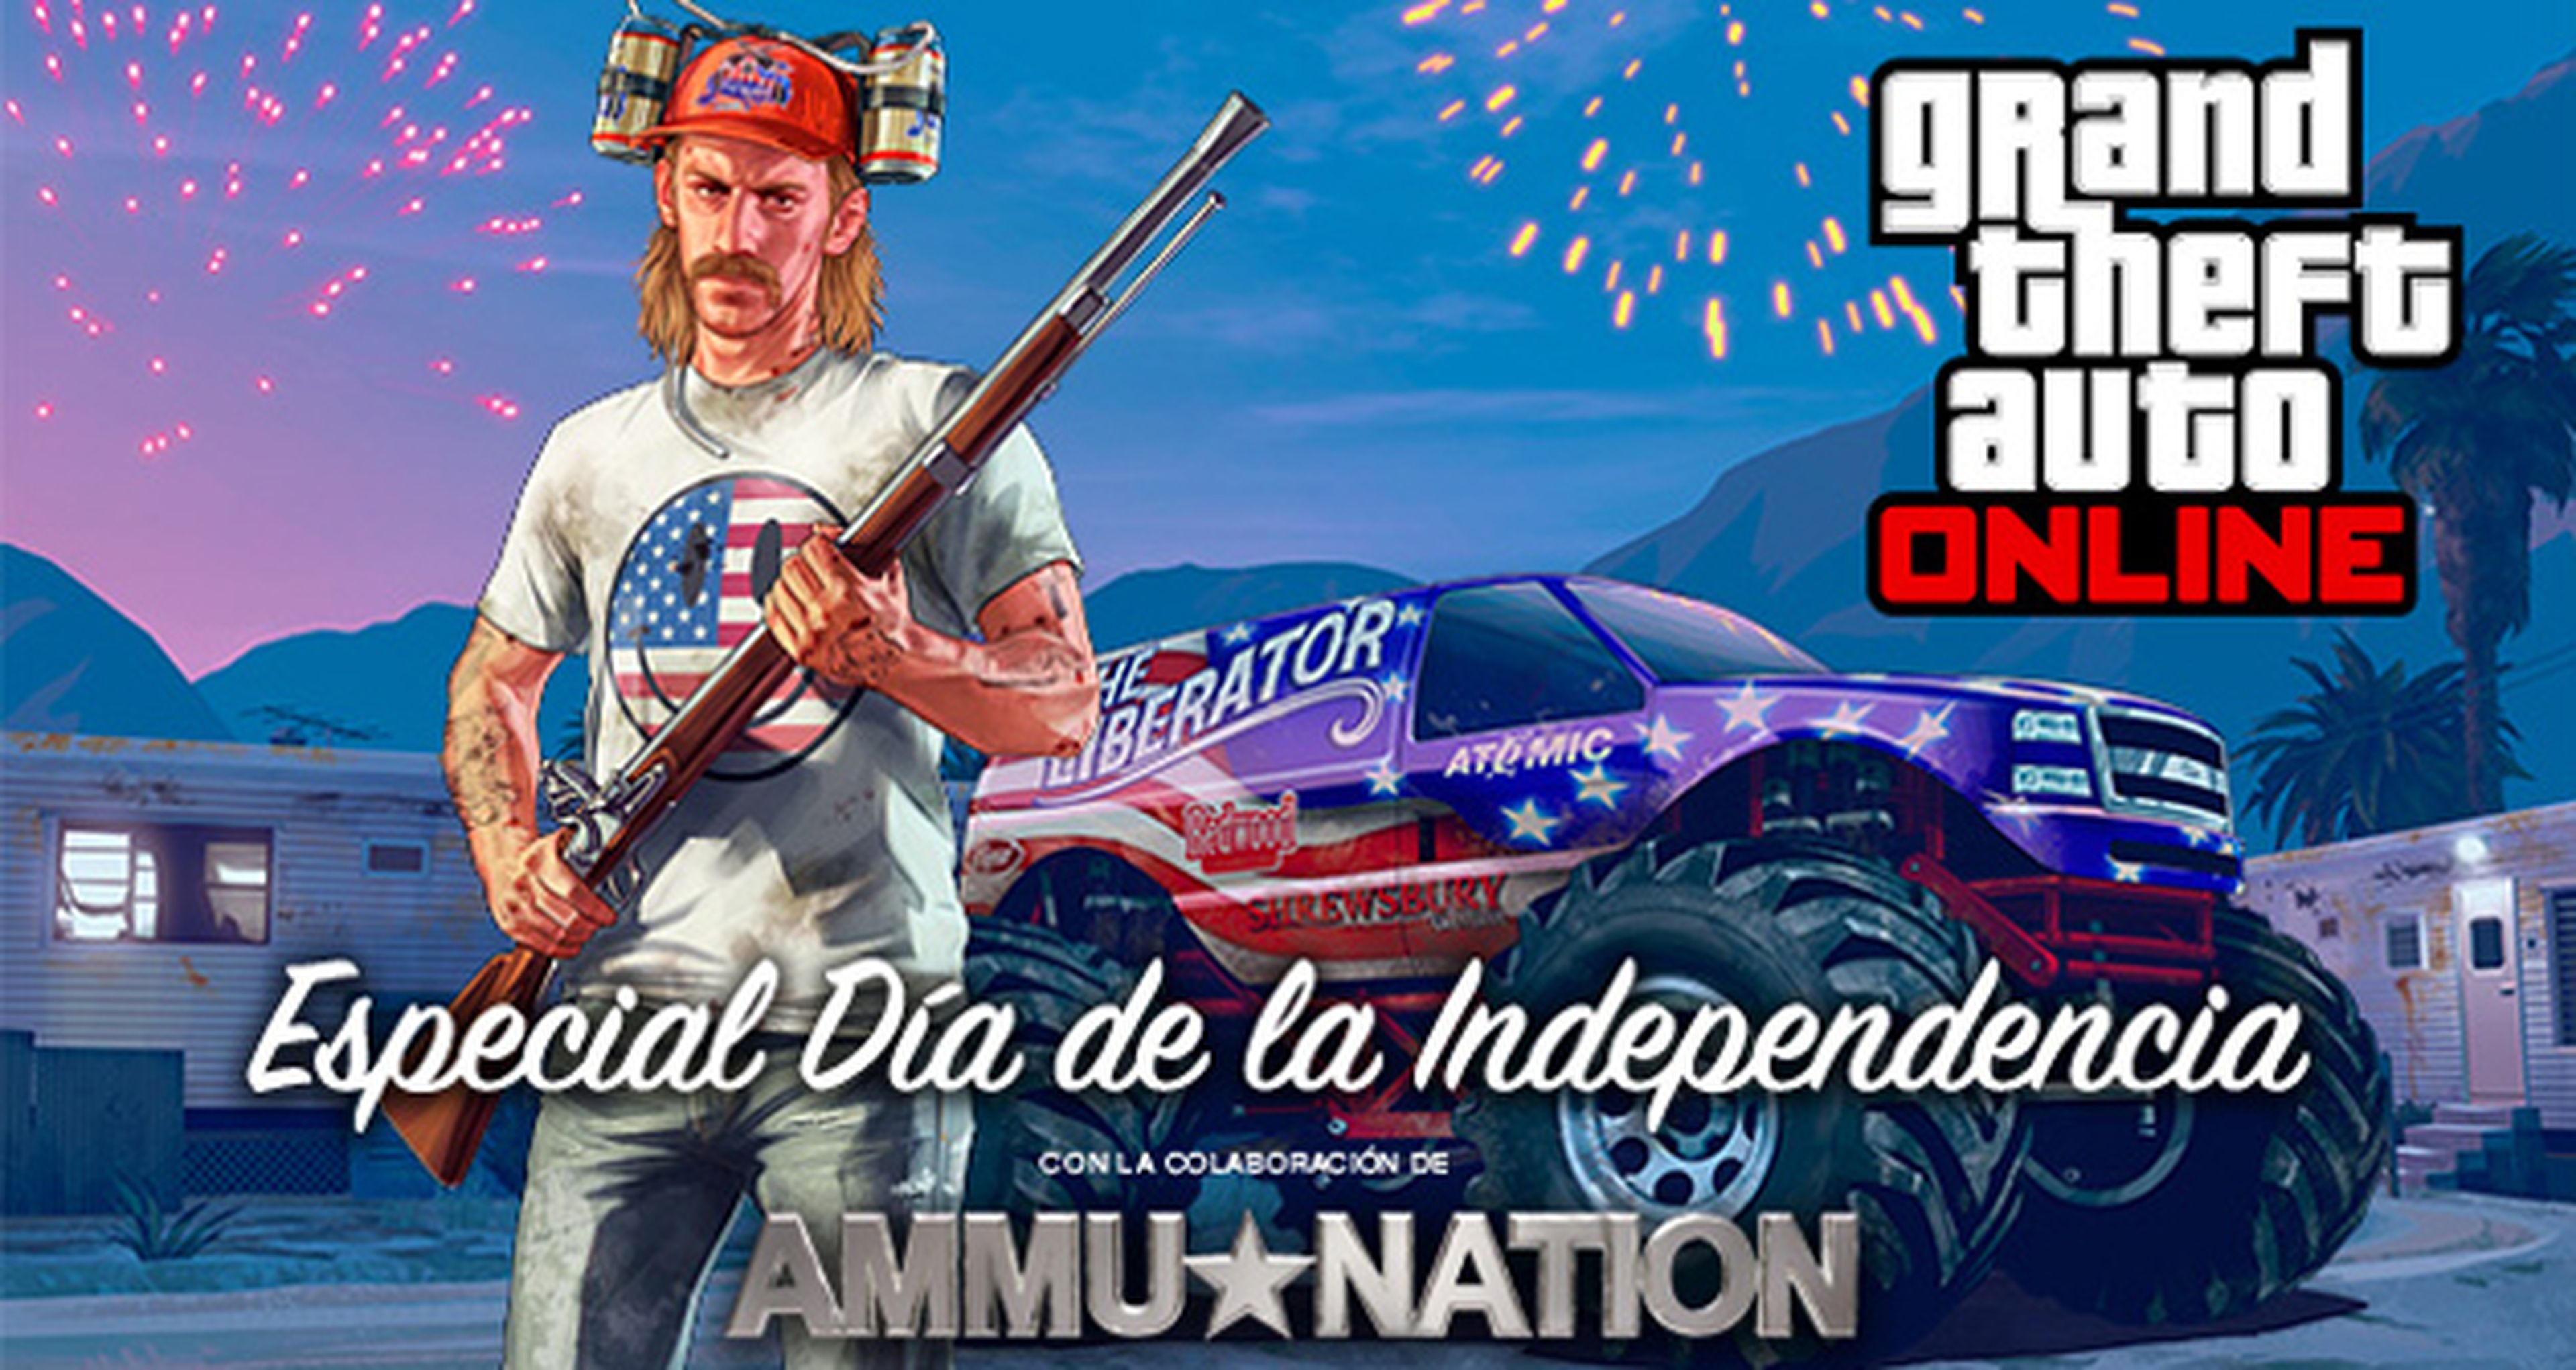 GTA Online celebra el Día de la Independencia con nuevo contenido